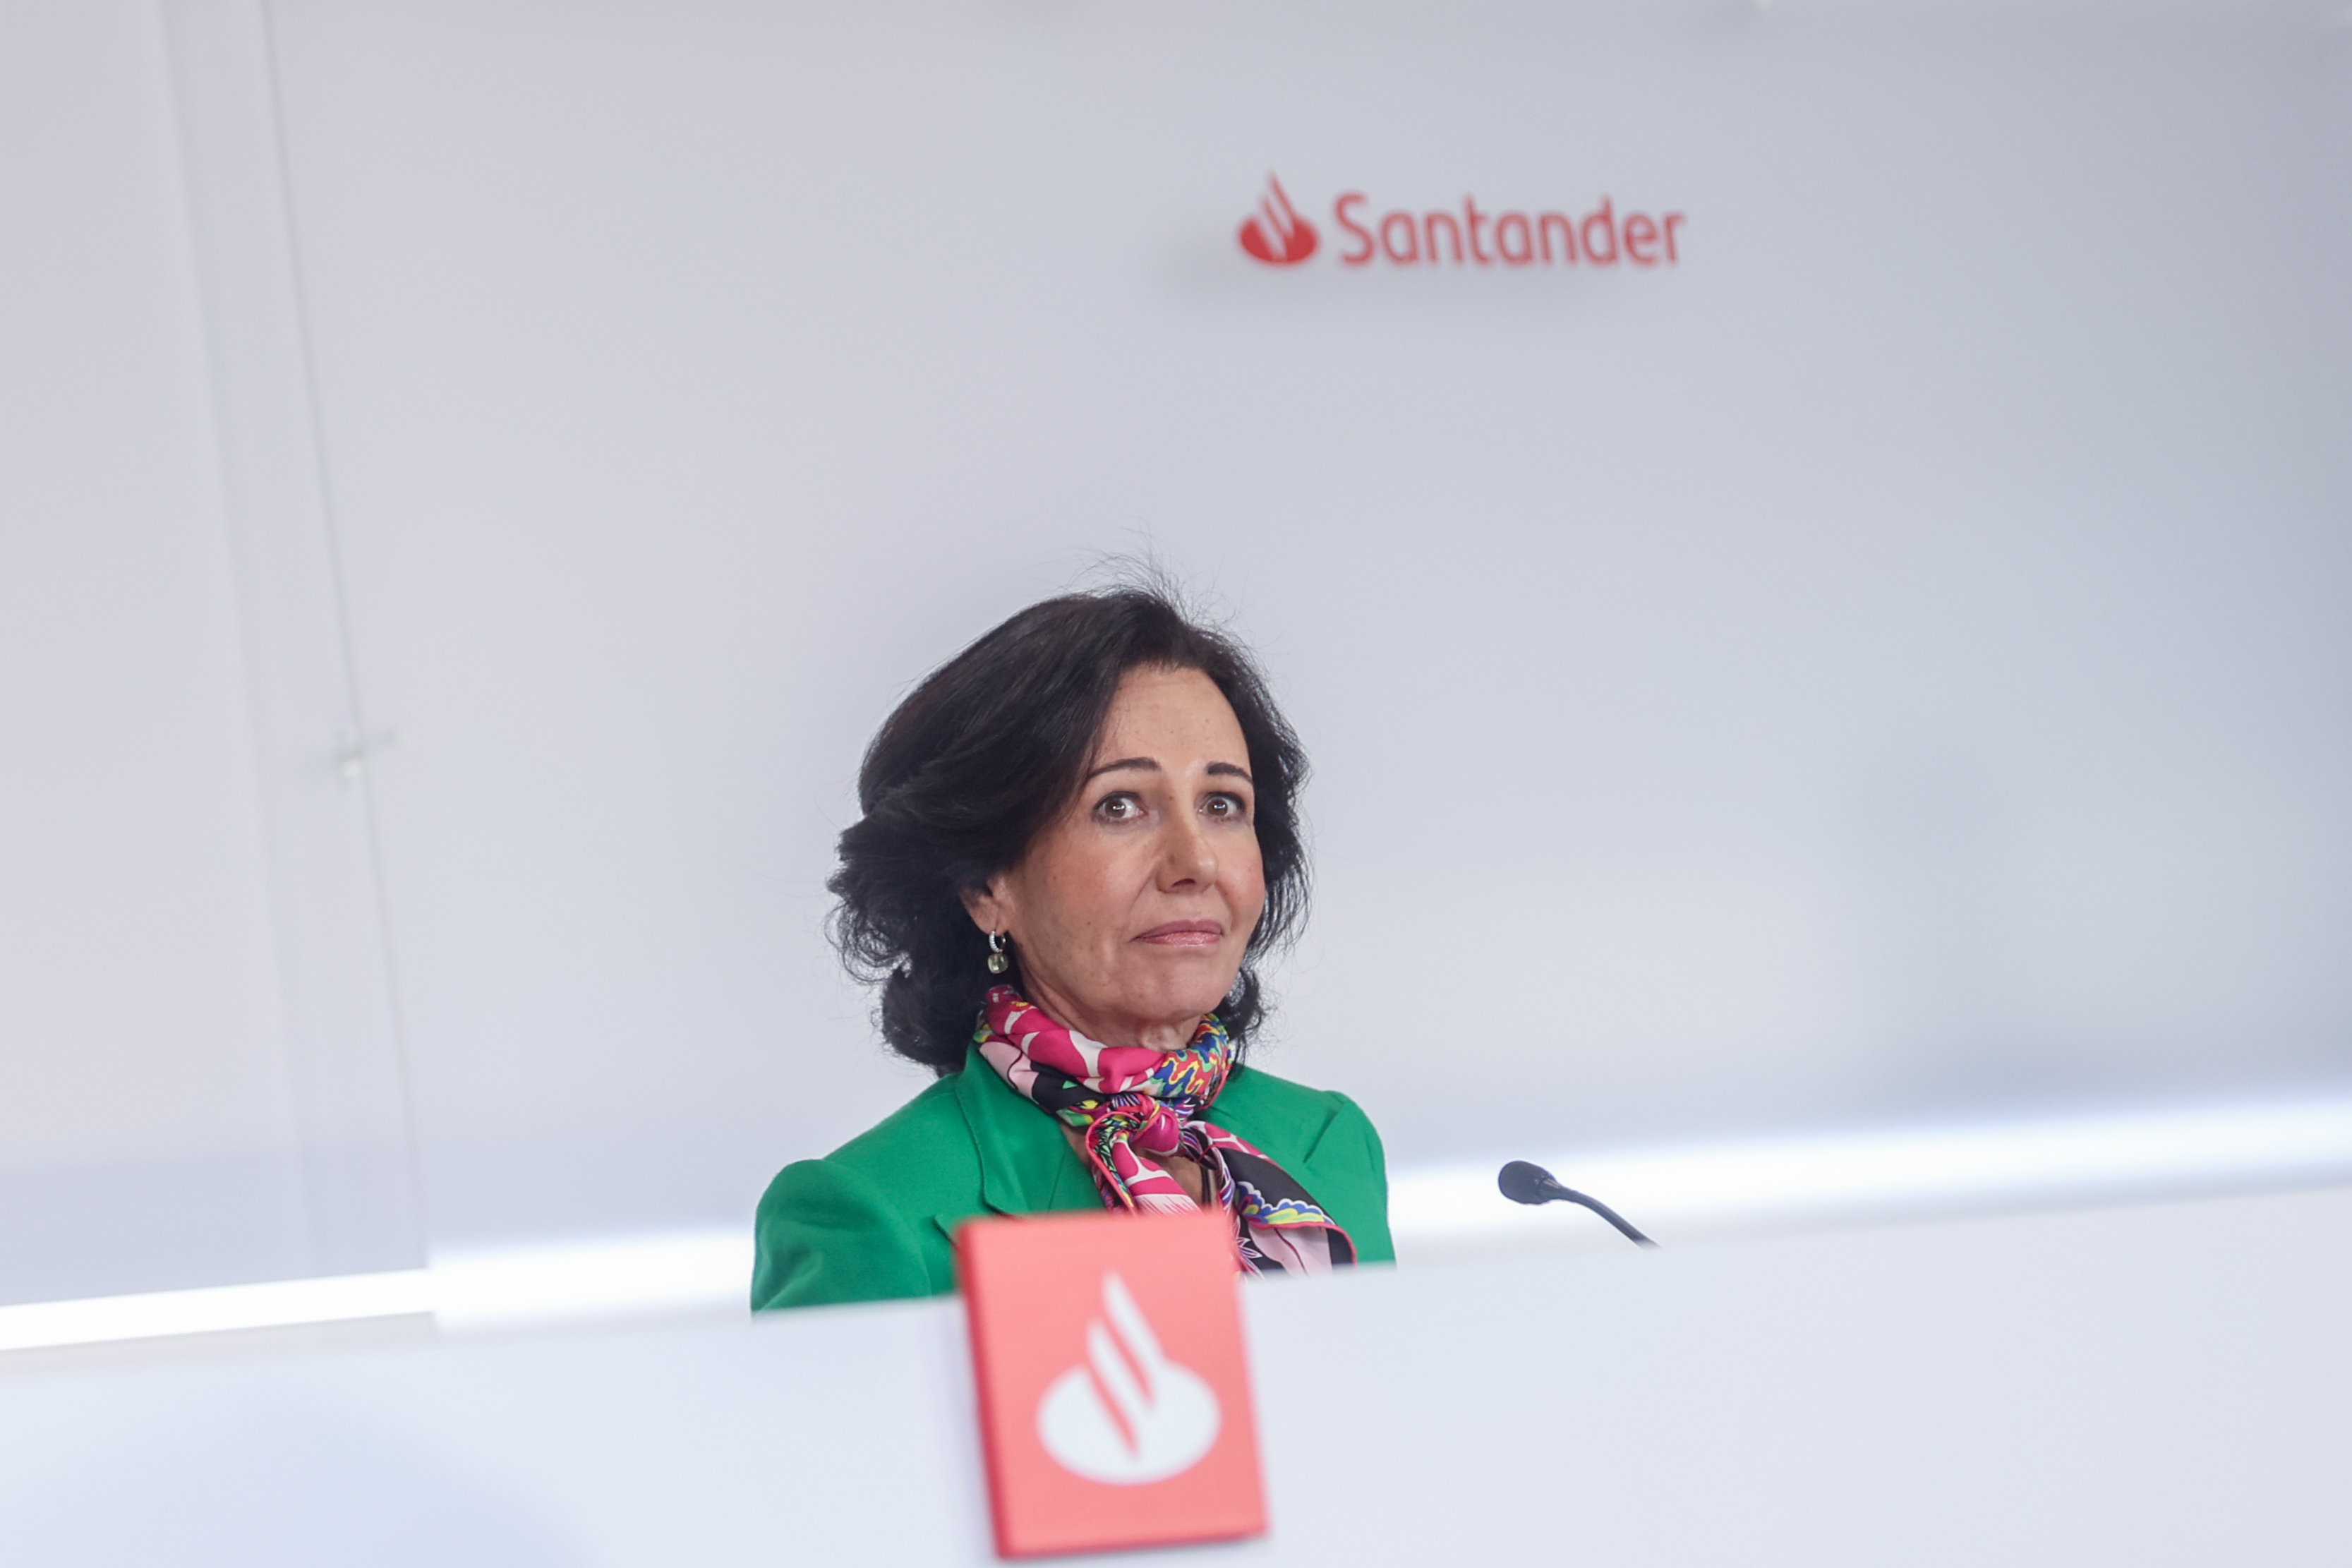 Santander engreixa el seu negoci d'assegurances amb més de 700 milions de capital